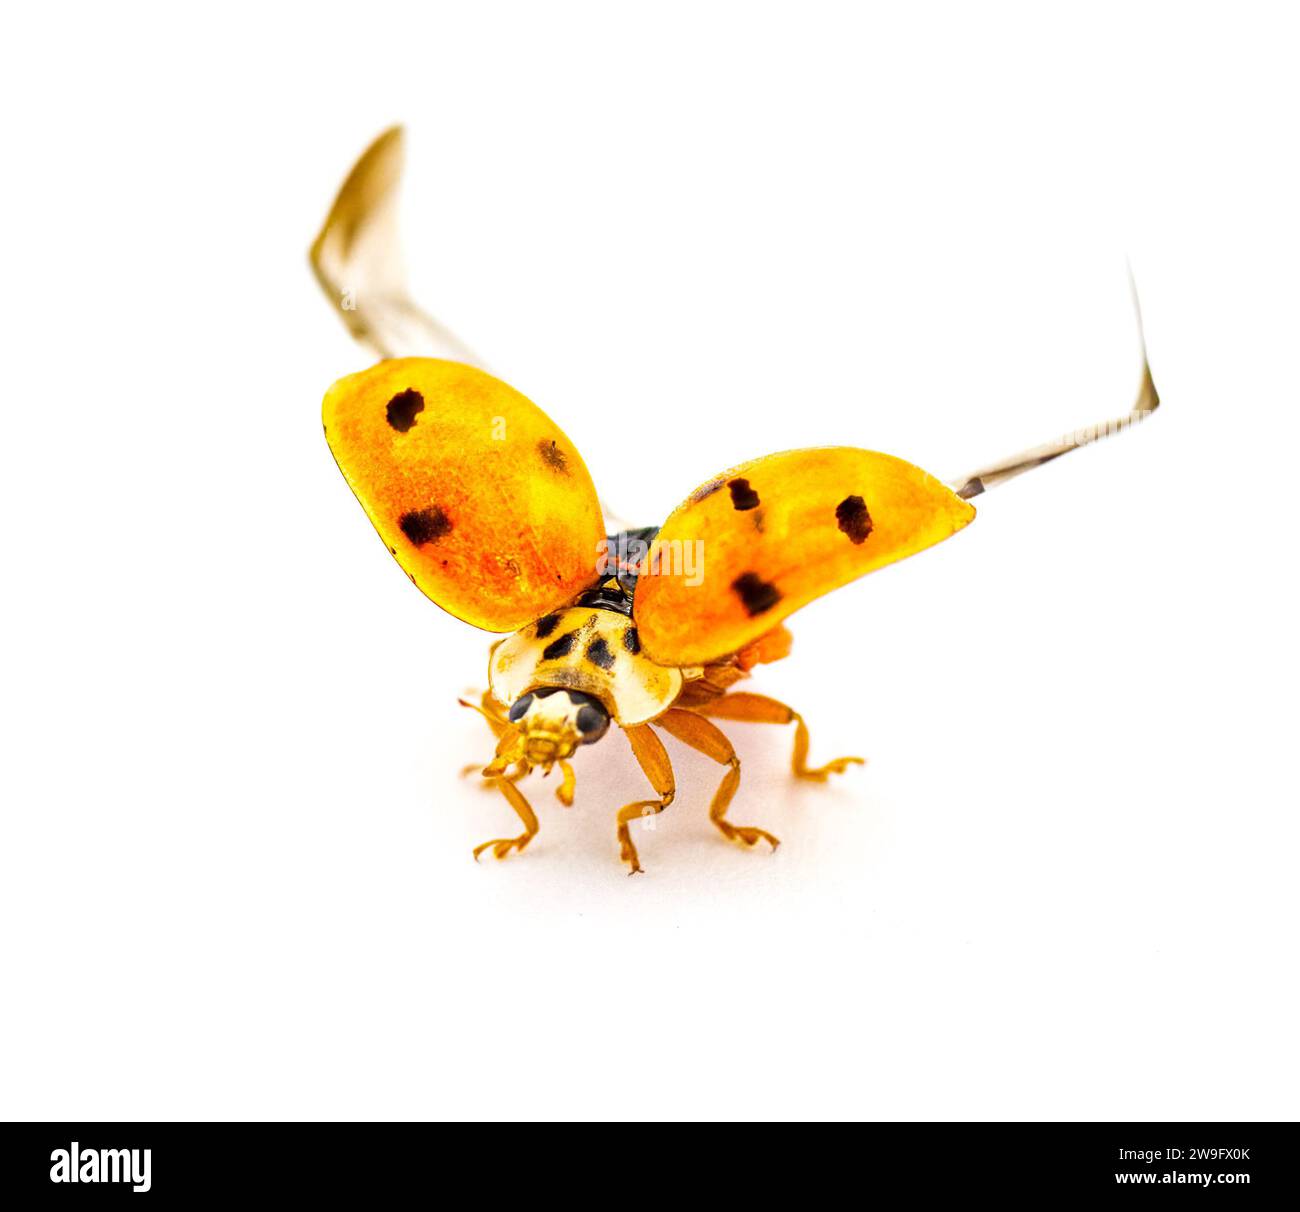 Coccinelle, coccinelle asiatique, coccinelle lady bug - Harmonia axyridis - ailes de coquille orange ouvertes se préparant pour le vol isolé sur fond blanc Banque D'Images